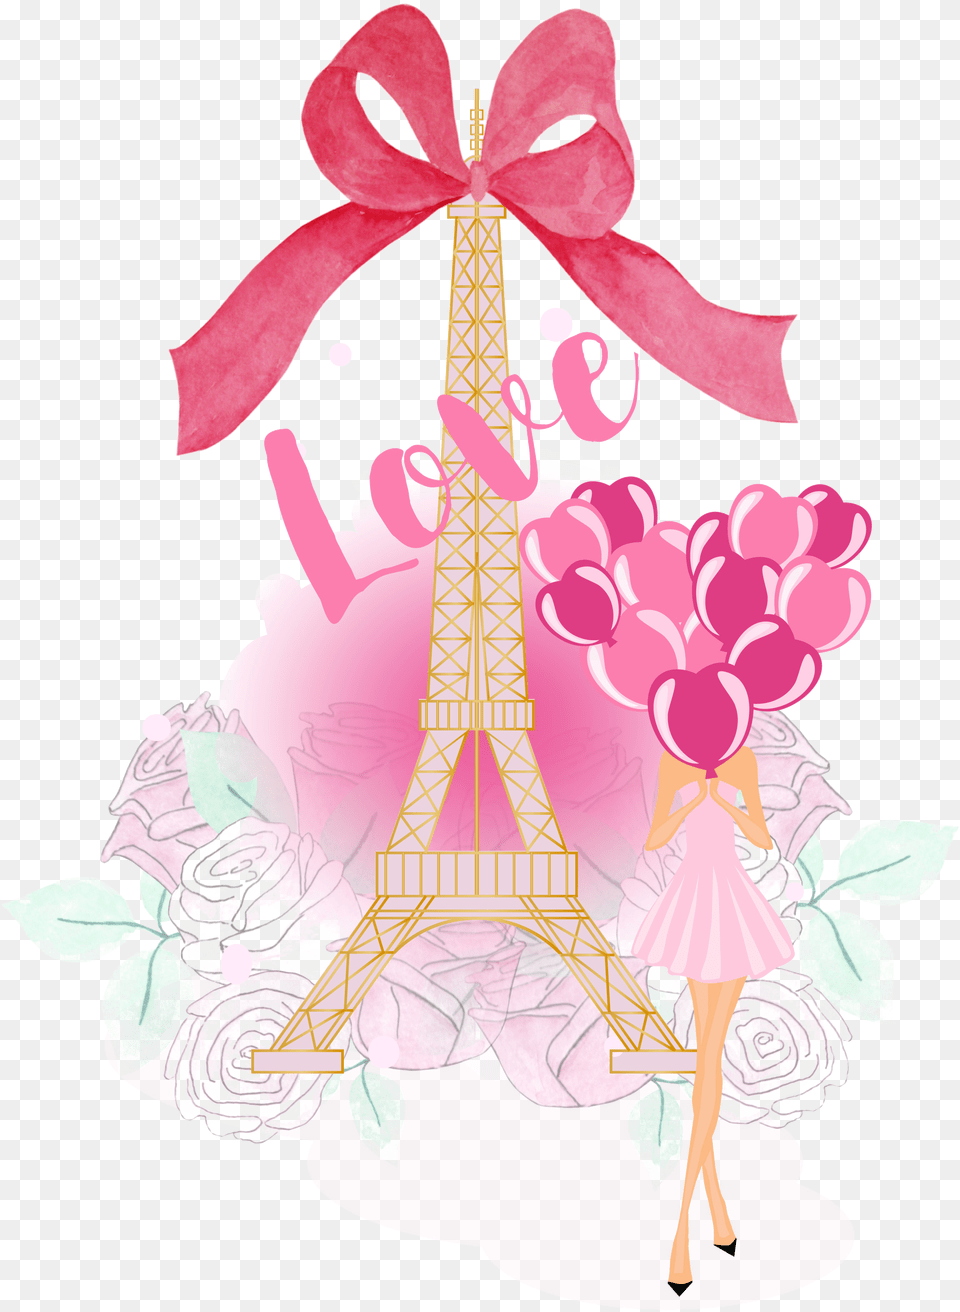 Paris Transparent Images Arts Clip Art, Clothing, Hat, Flower, Plant Png